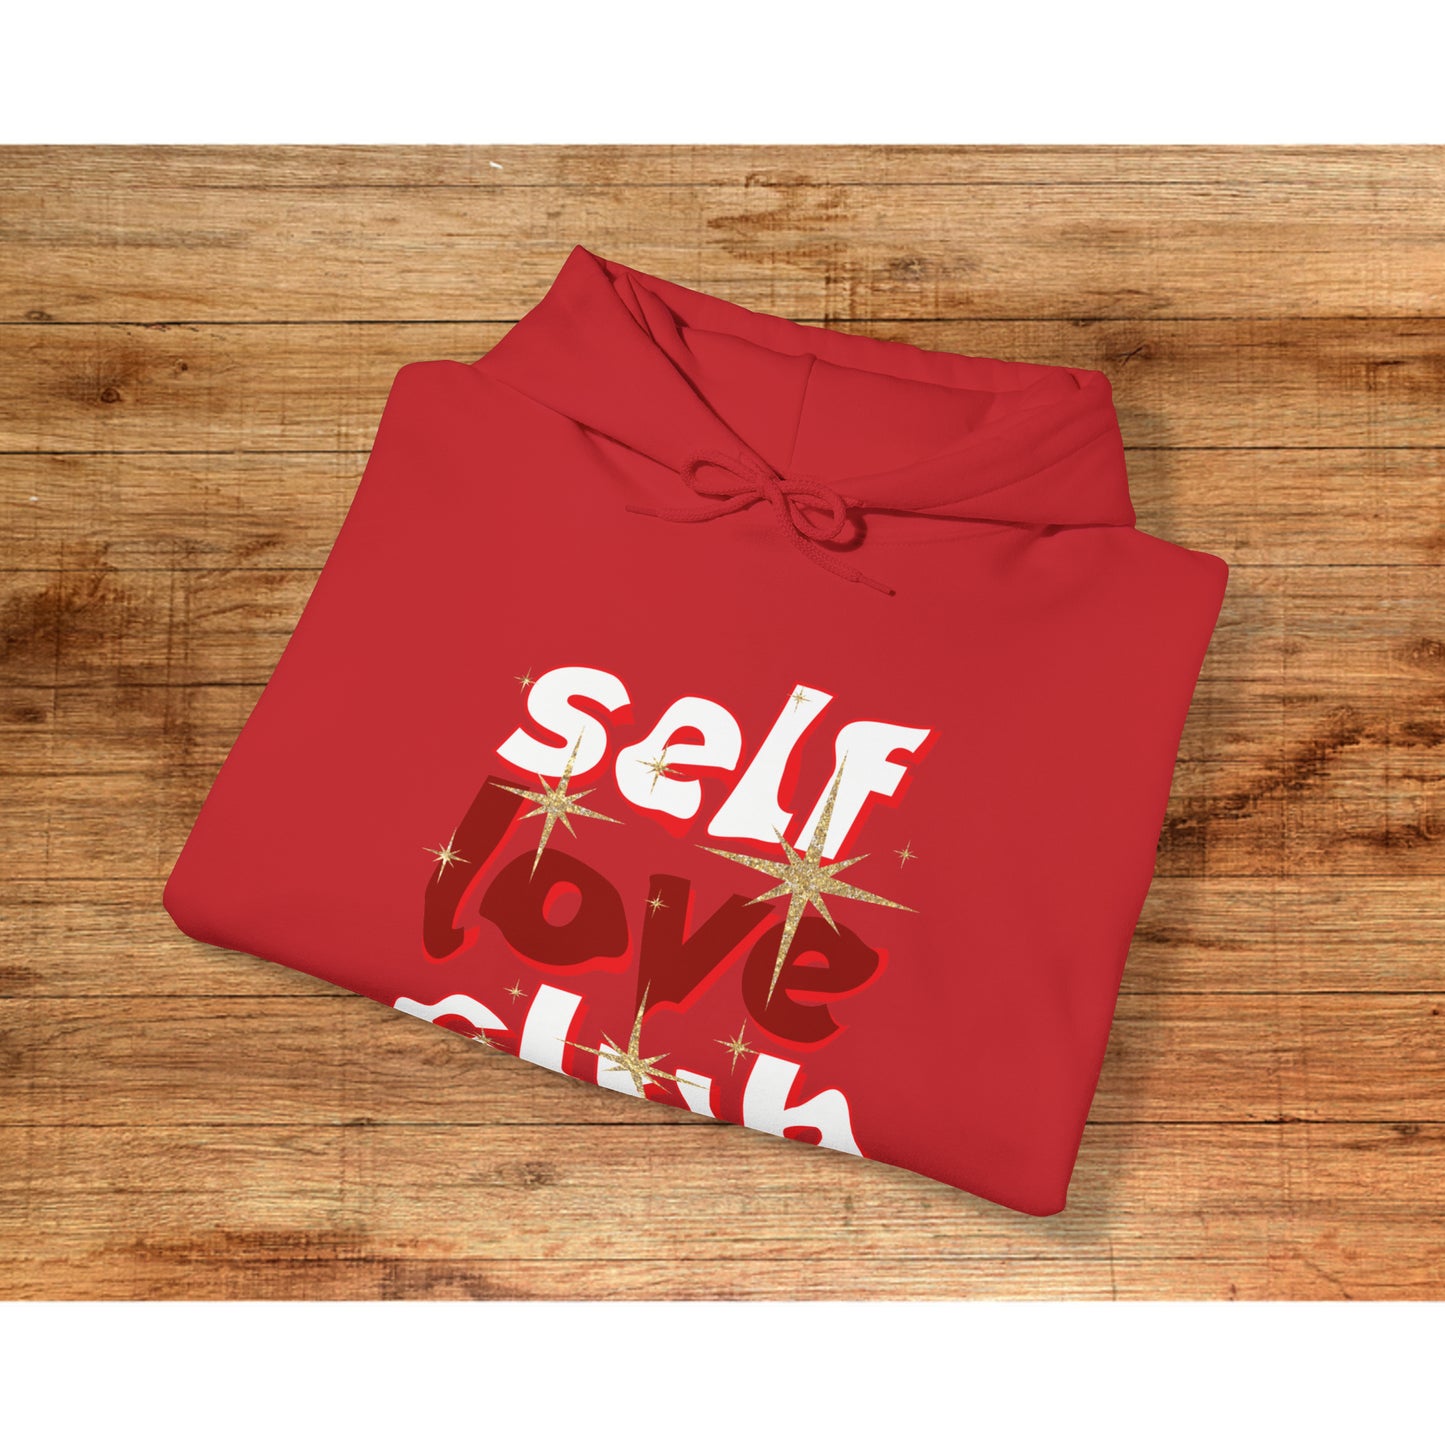 Self Love Club Hooded Sweatshirt